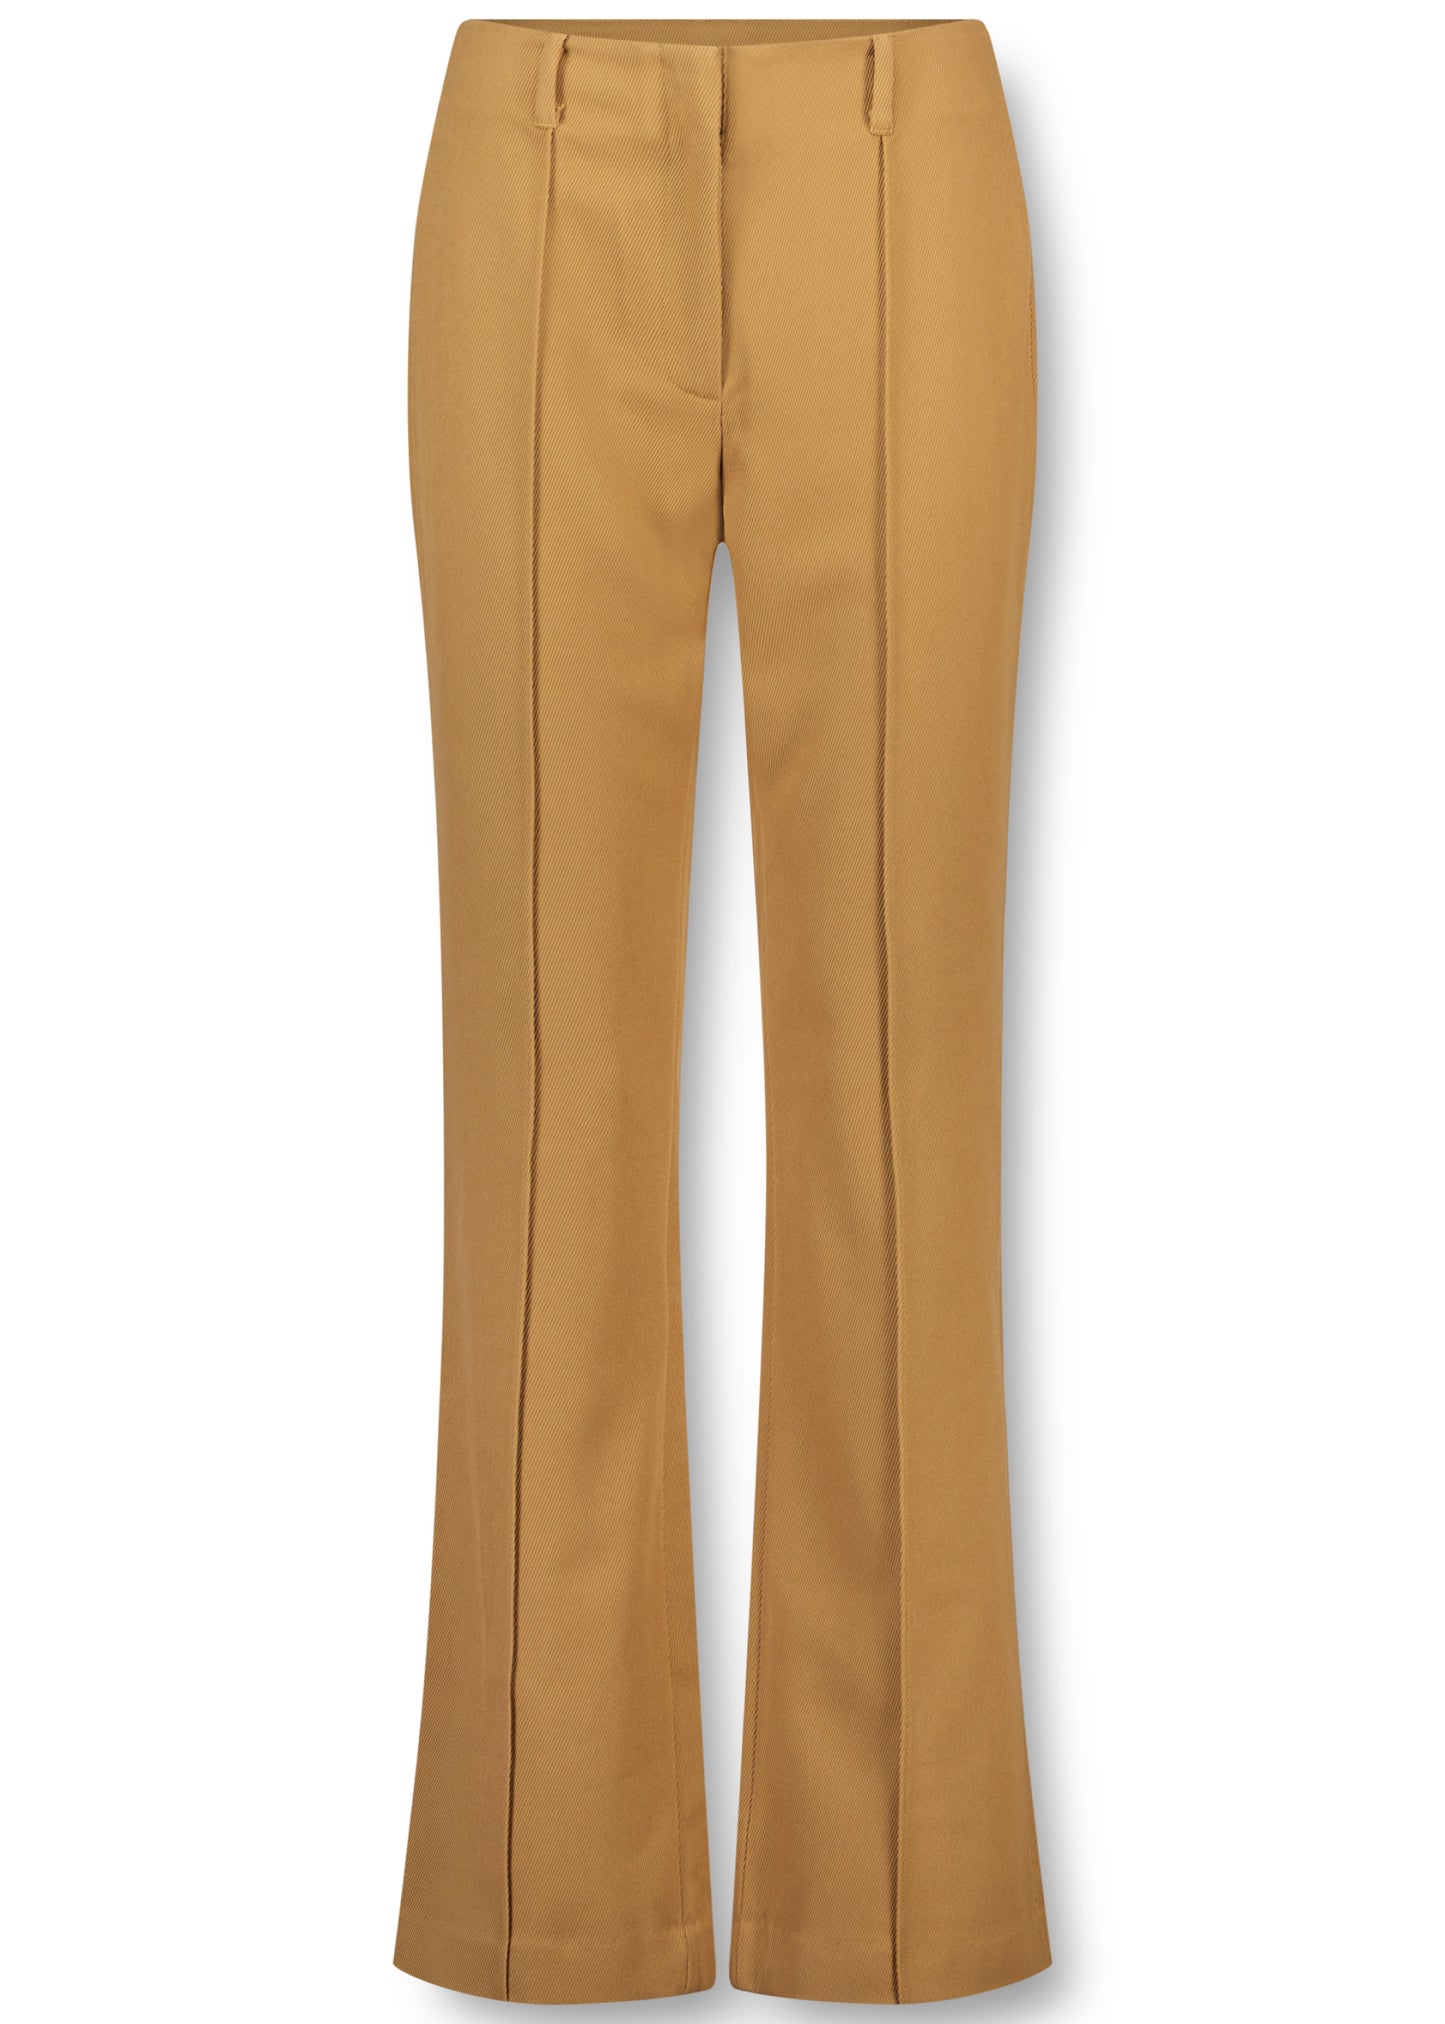 Shay Pants - Brown - Packshot - Pants - Simple